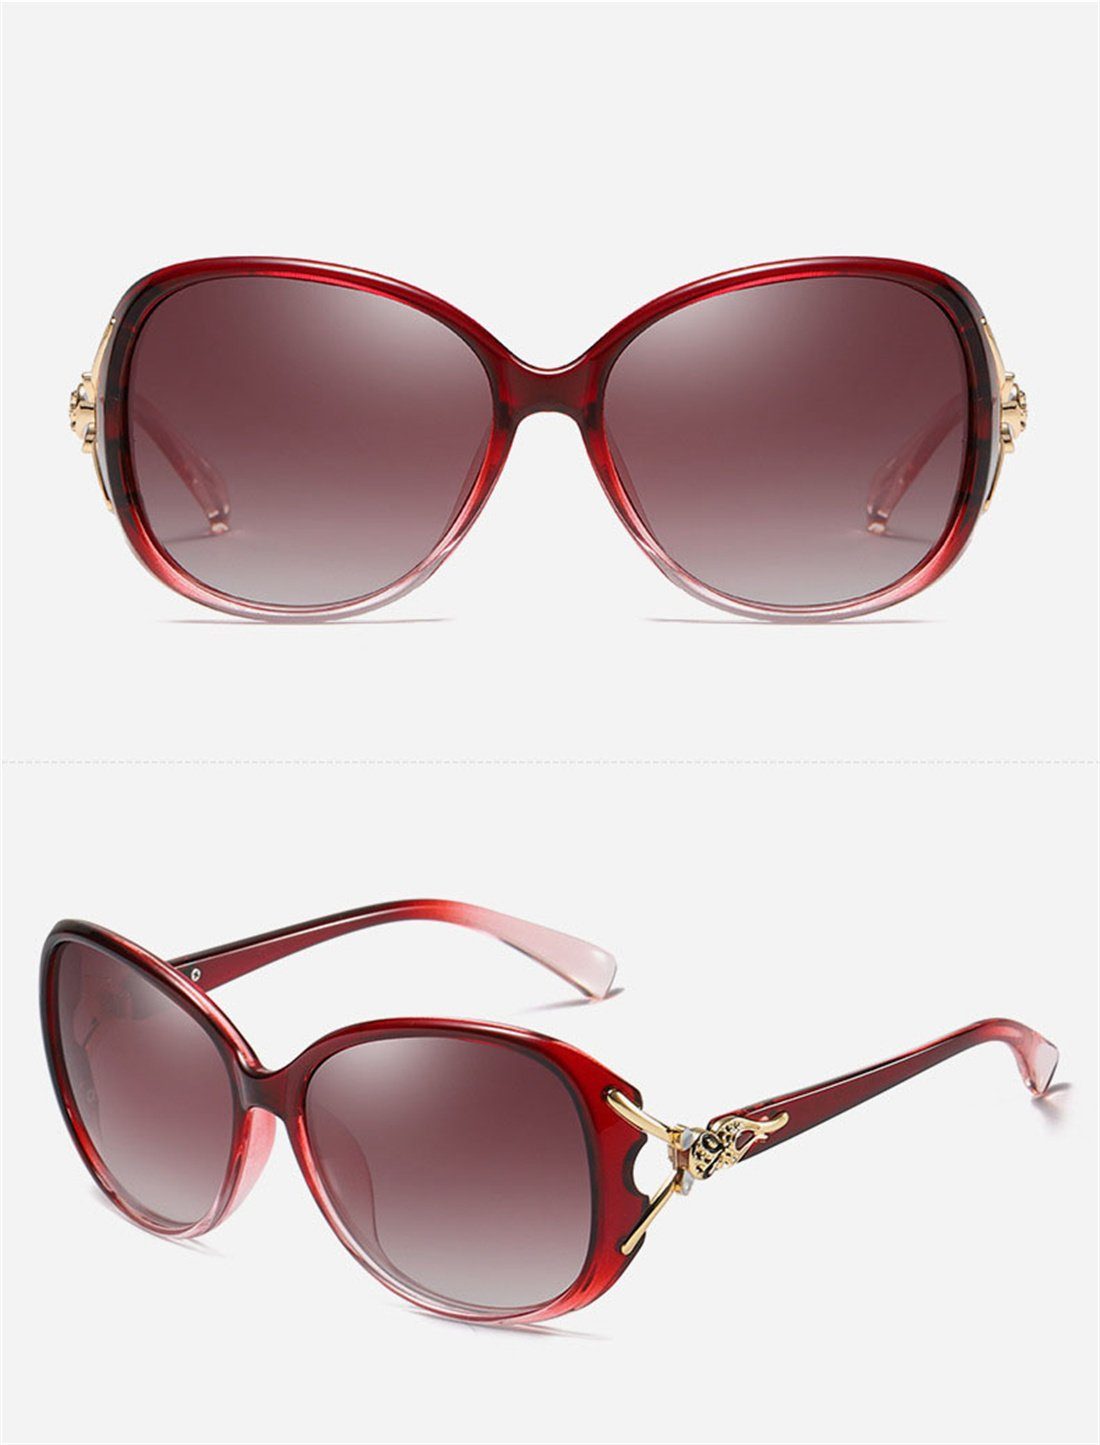 Sonnenbrille DÖRÖY Outdoor-Sonnenbrille Rot Damen-Sommer-Sonnenbrille, Polarisierende